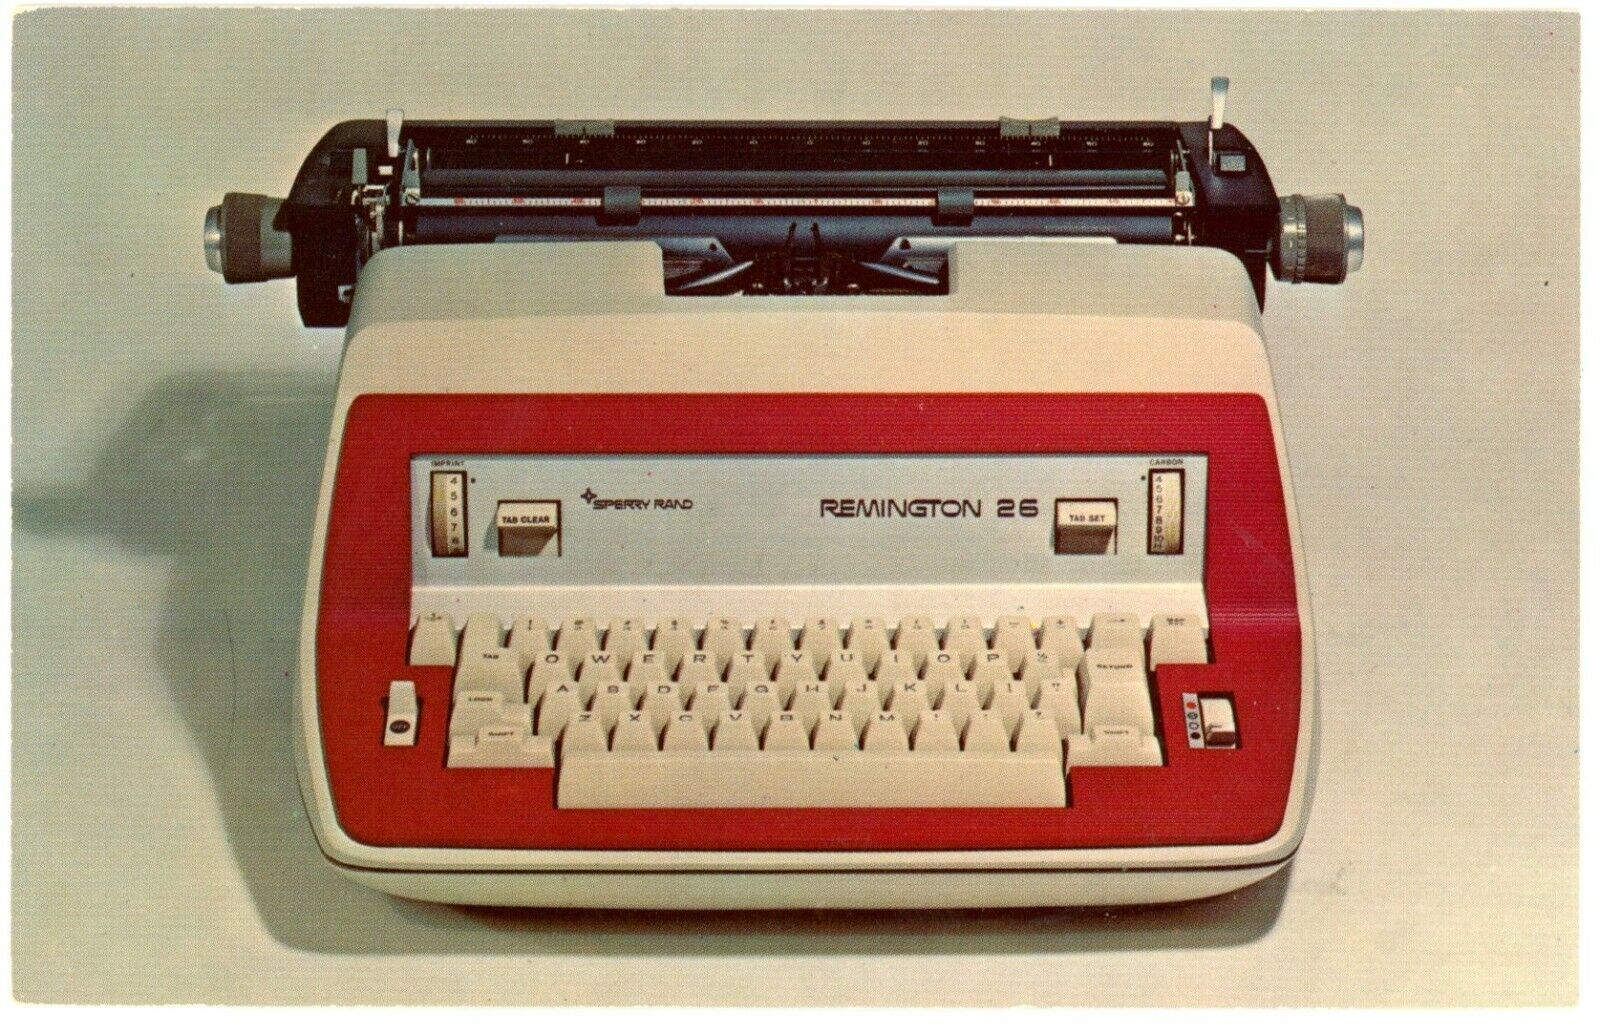 Red Remington Typewriter Acme Typewriter Service Denver, Colorado 1971 Postcard